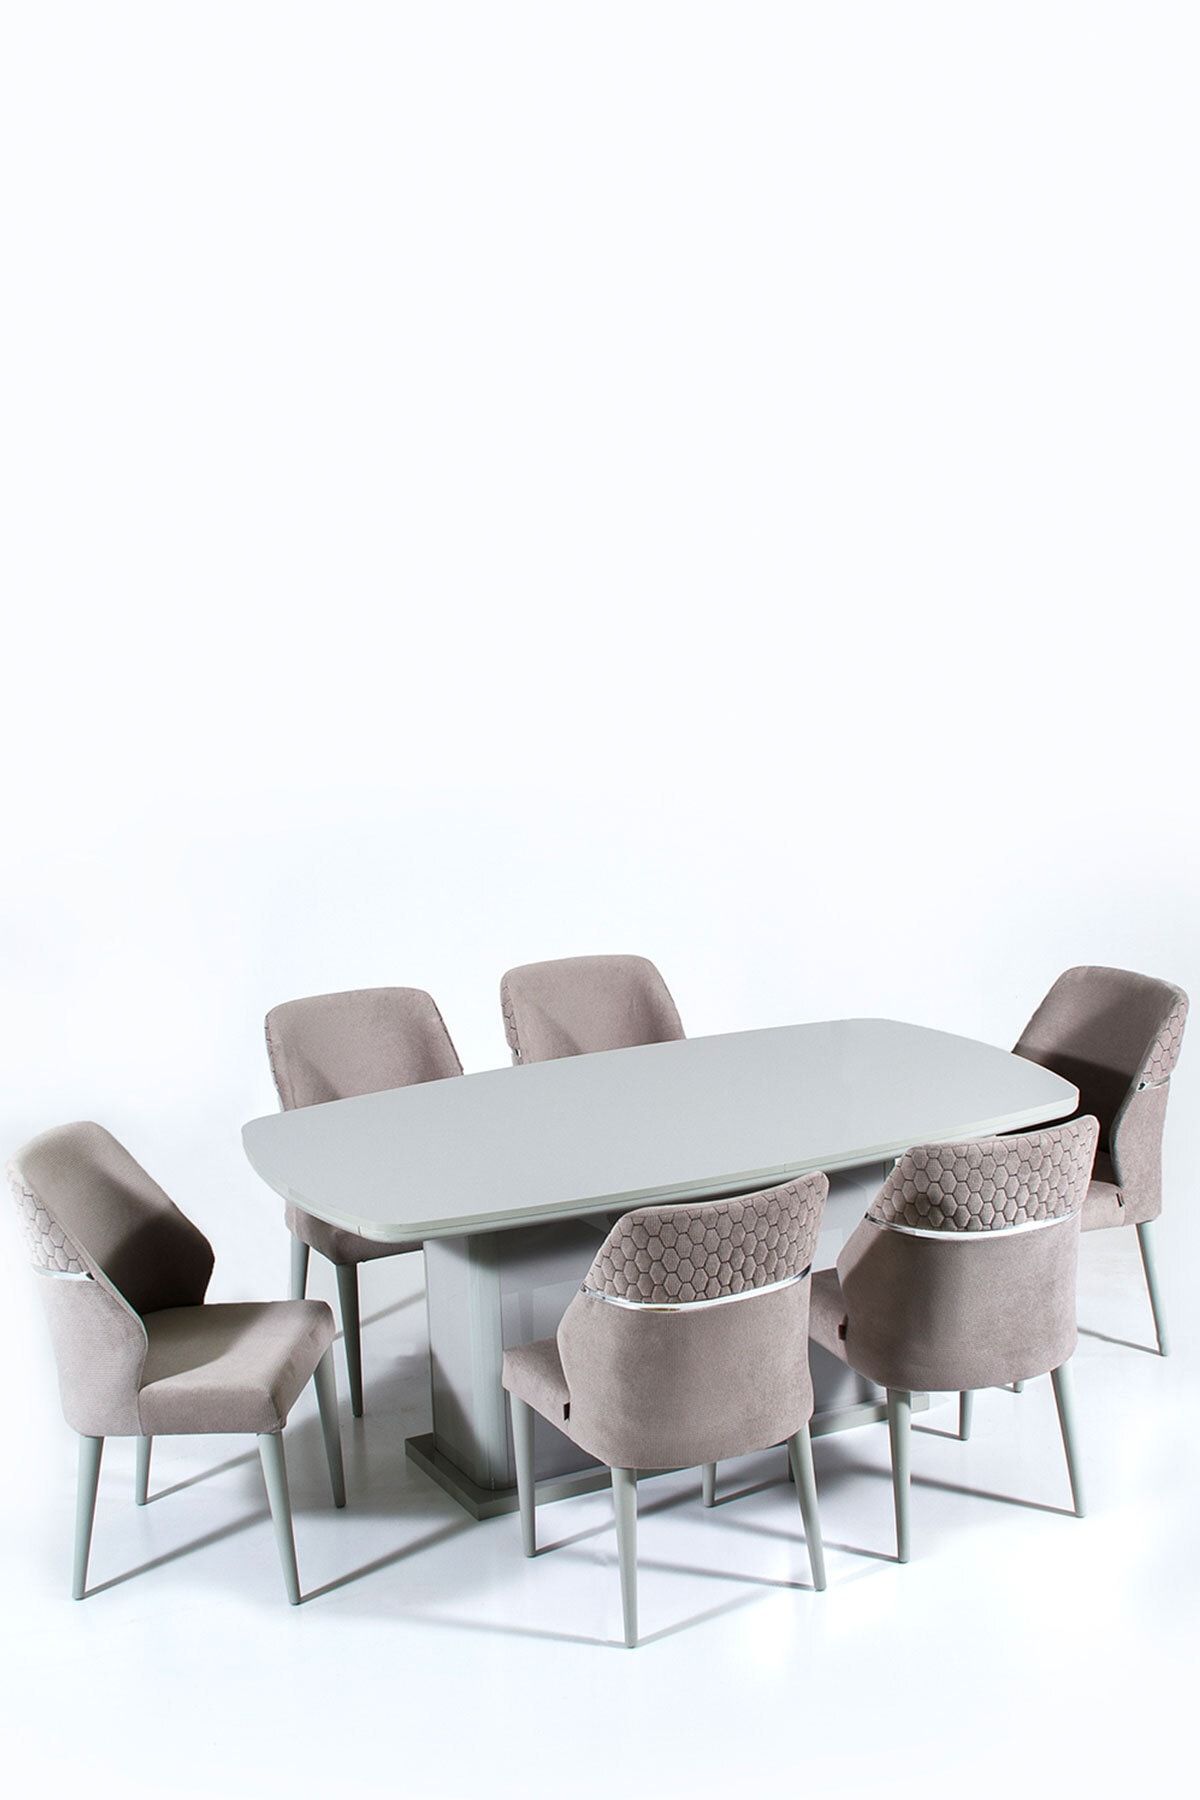 Modalife 6 Sandalye 1 Sabit Masa Yemek Masası Takımı 6 Kişilik Gri